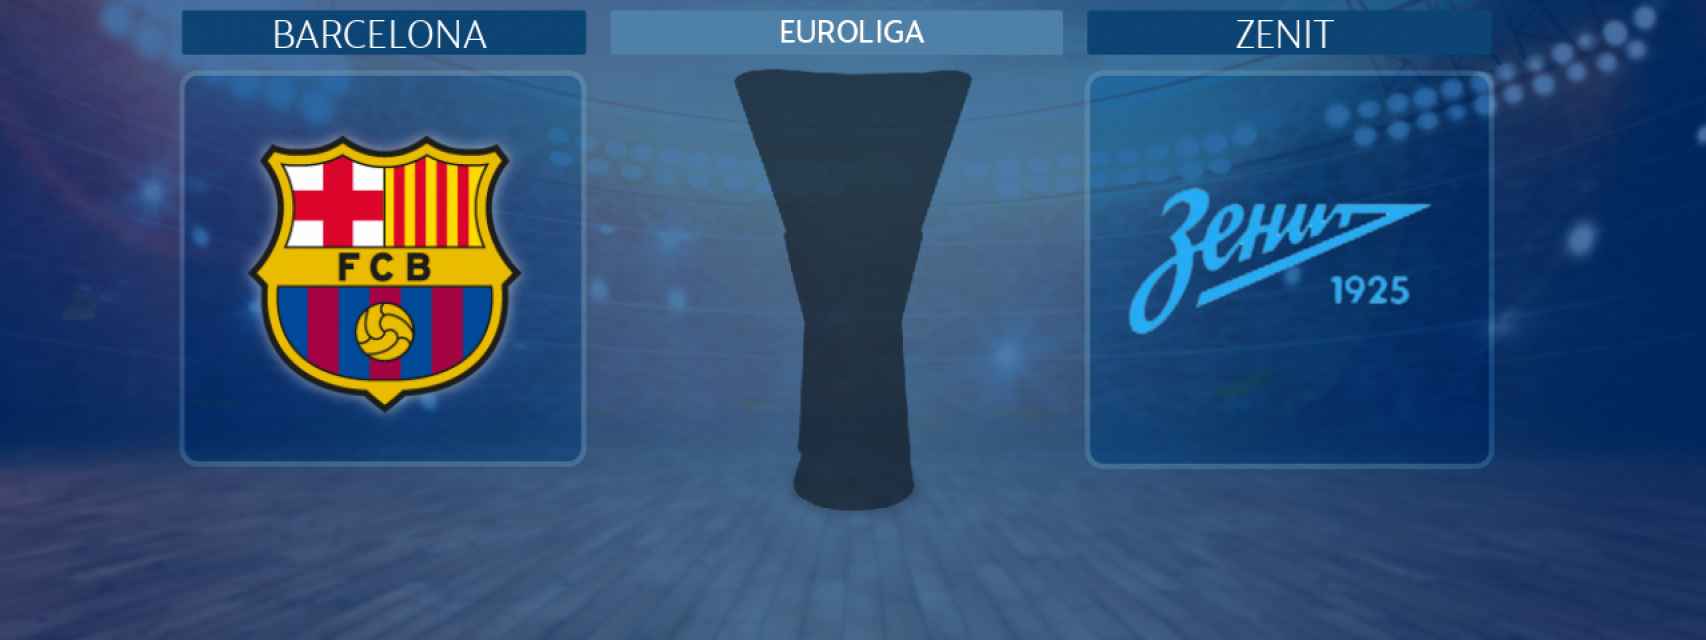 Barcelona - Zenit, partido de la Euroliga